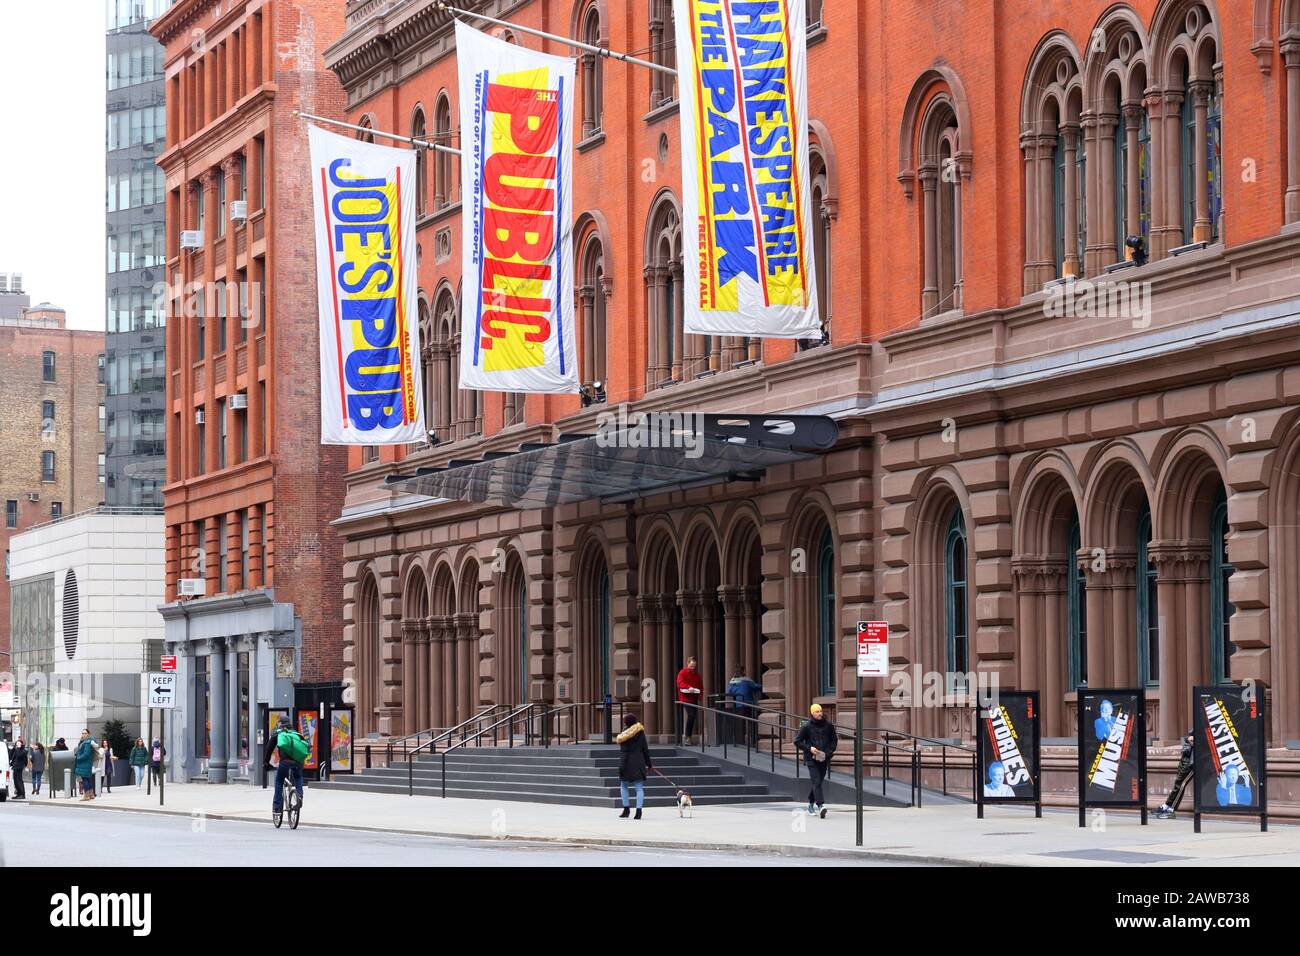 Théâtre public, 435 Lafayette Street, New York, NY. Extérieur d'un théâtre hors-broadway dans le quartier East Village de Manhattan. Banque D'Images